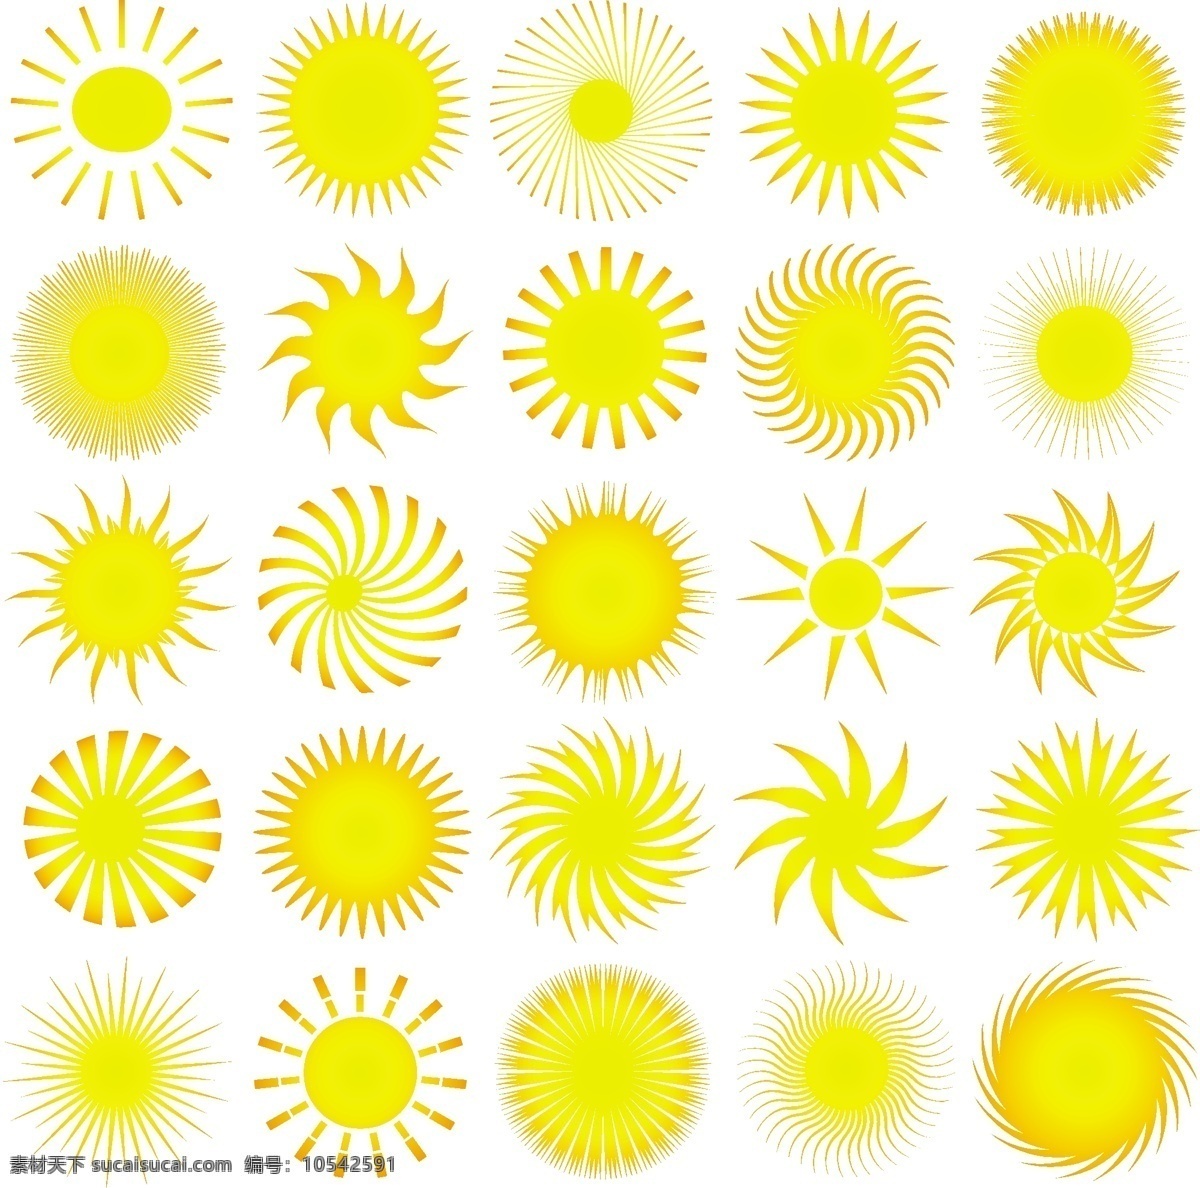 各种 金黄色 太阳 图标 太阳图标